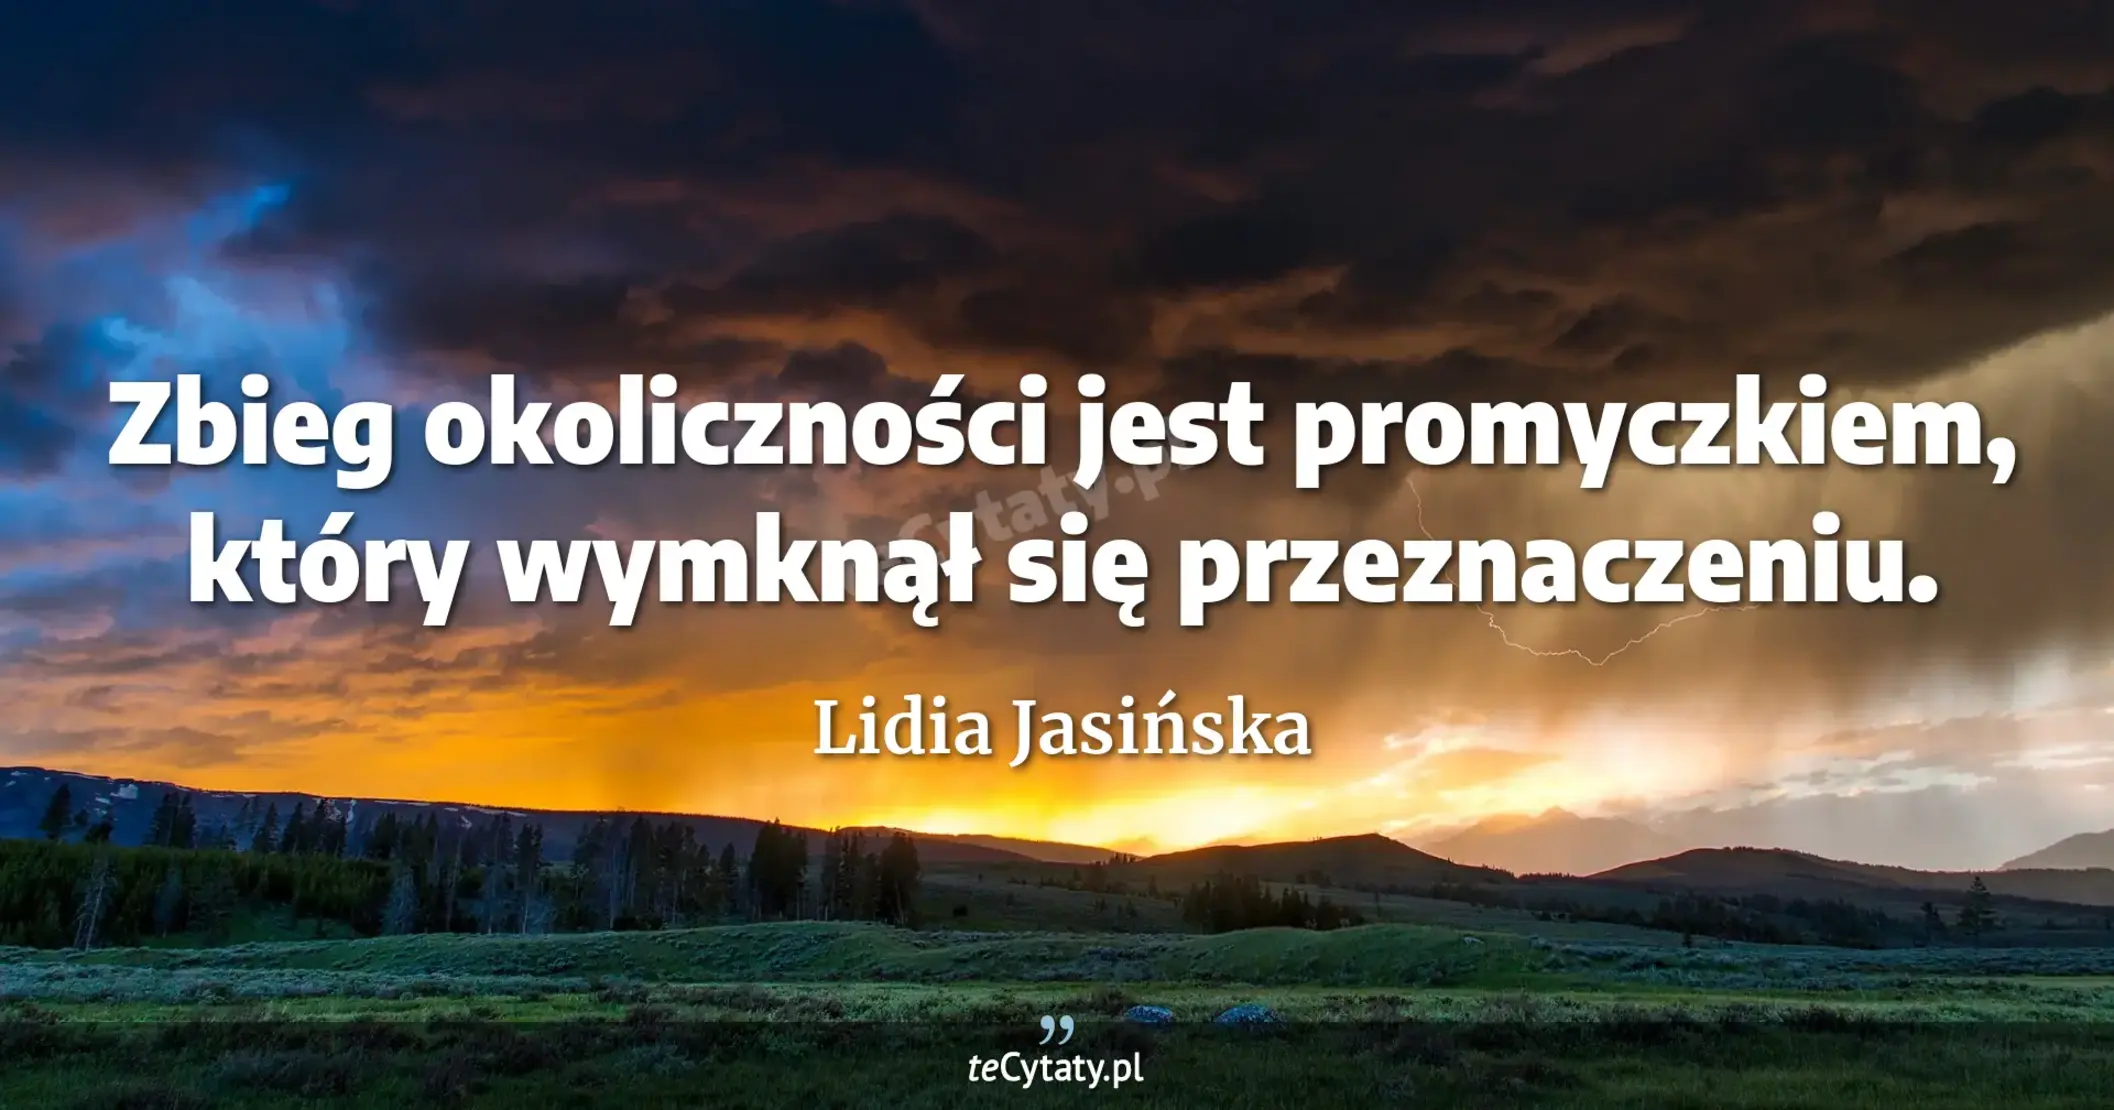 Zbieg okoliczności jest promyczkiem, który wymknął się przeznaczeniu. - Lidia Jasińska